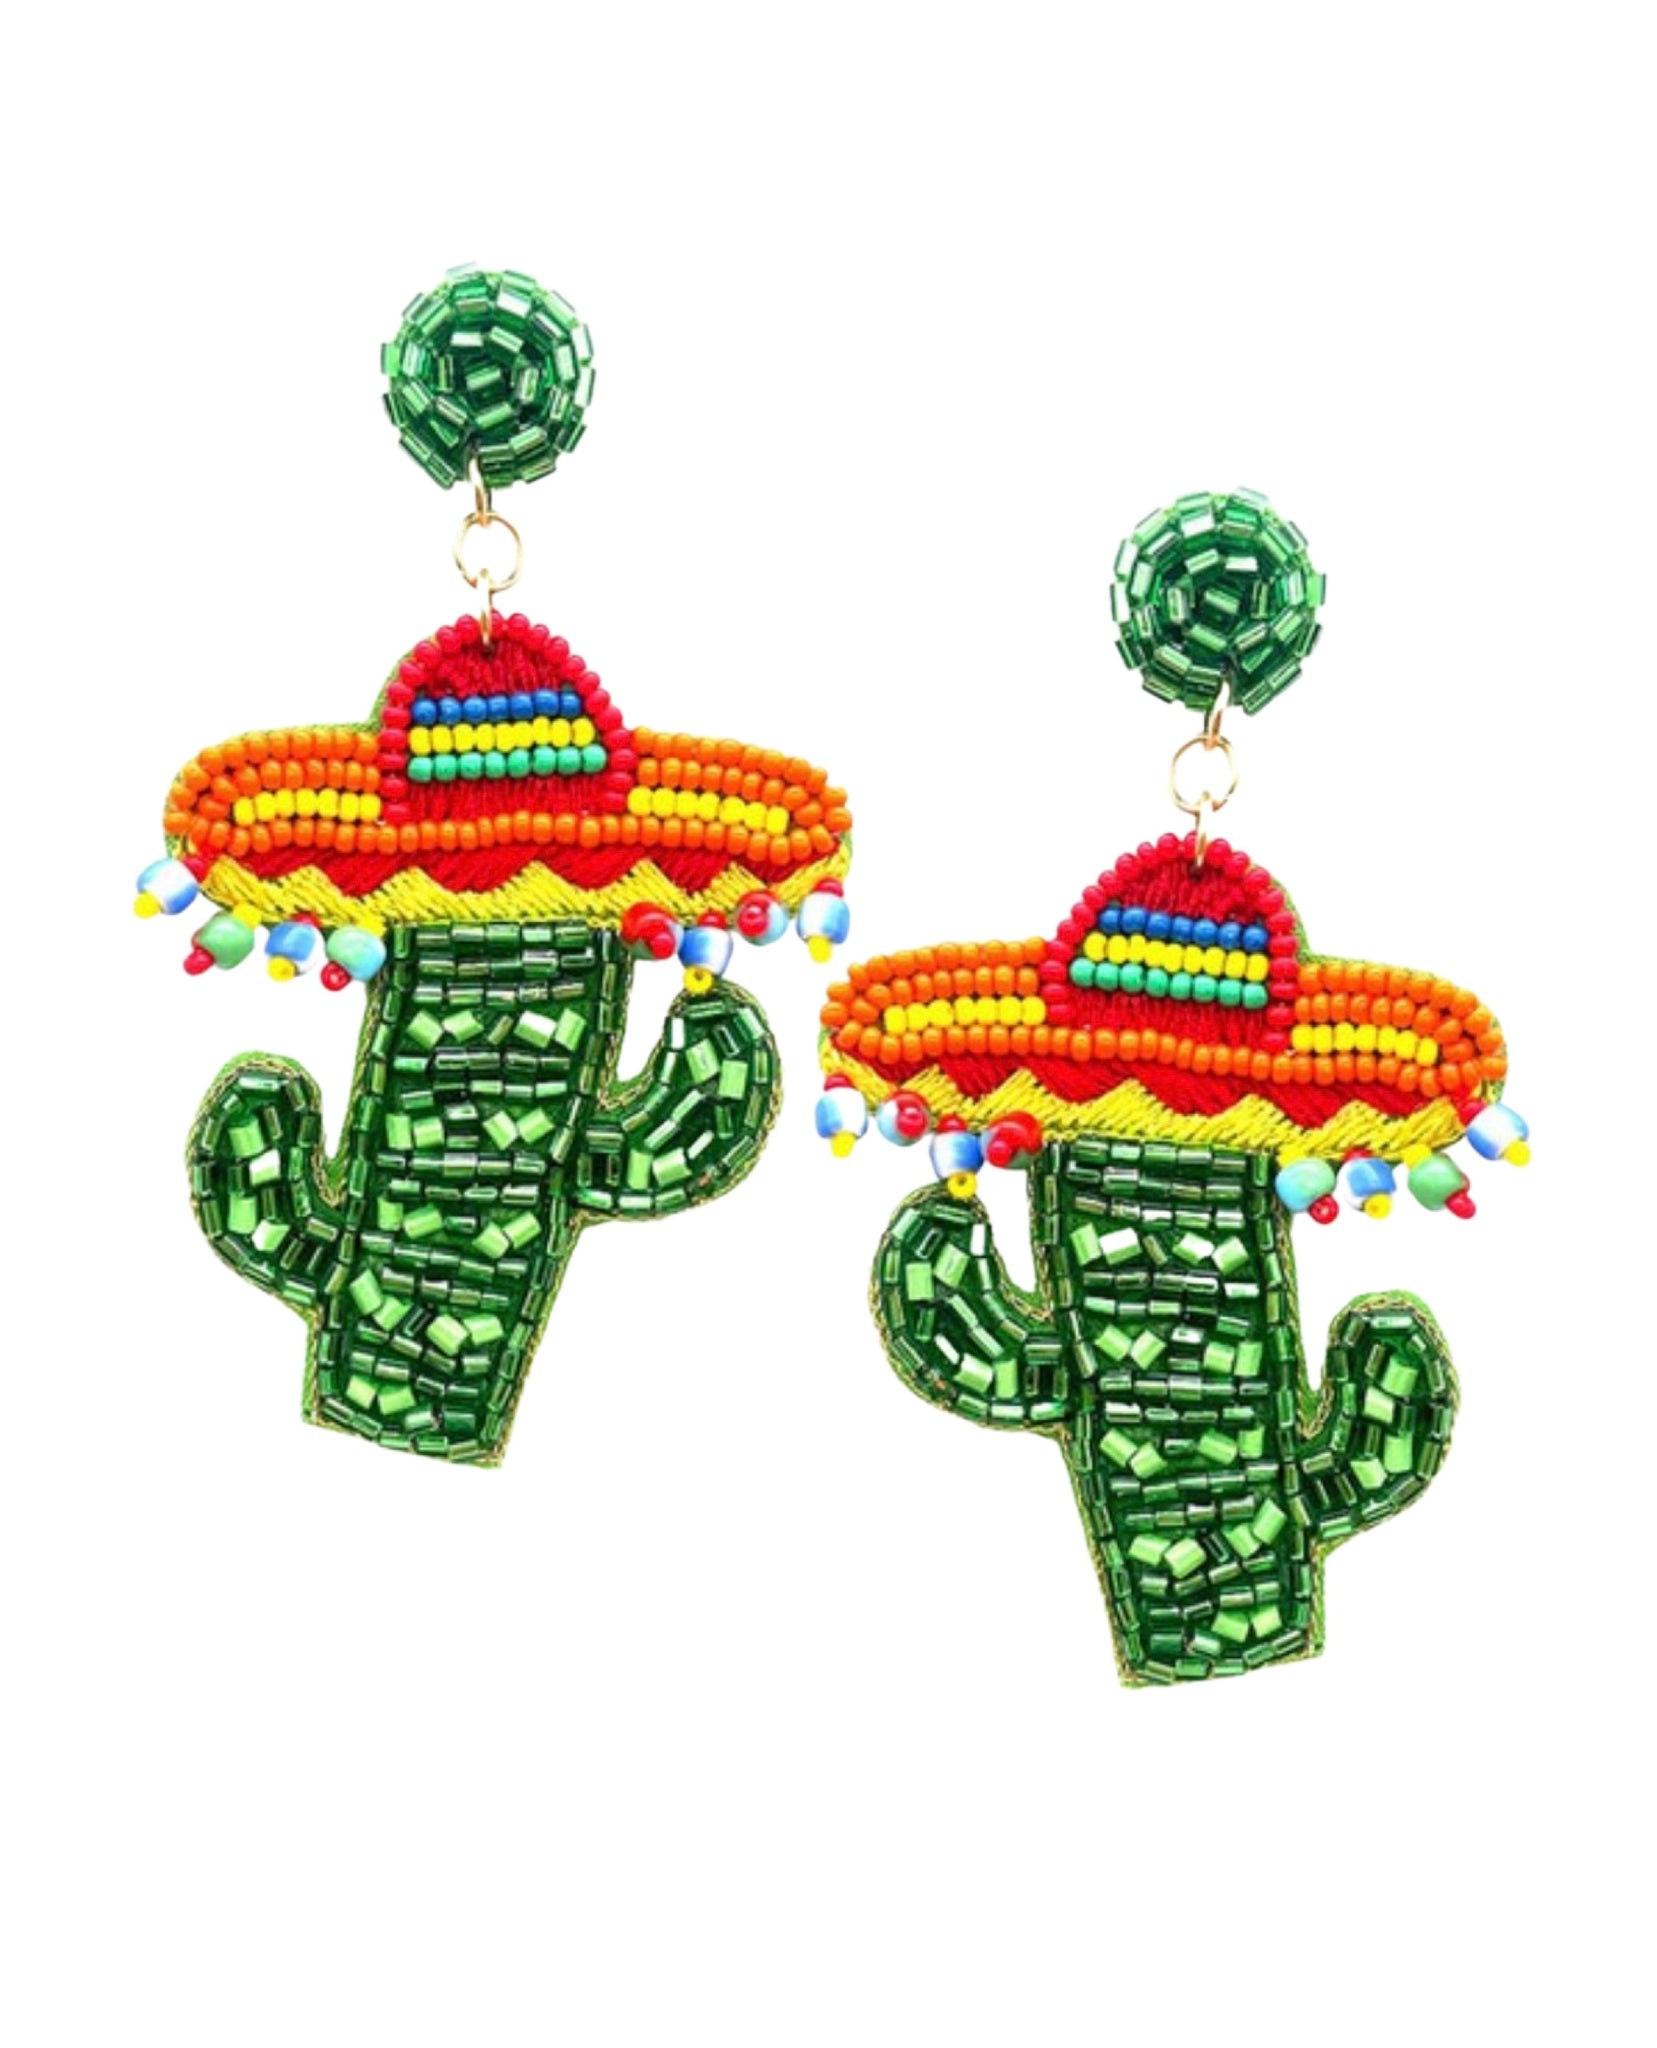 Green Cactus Earrings